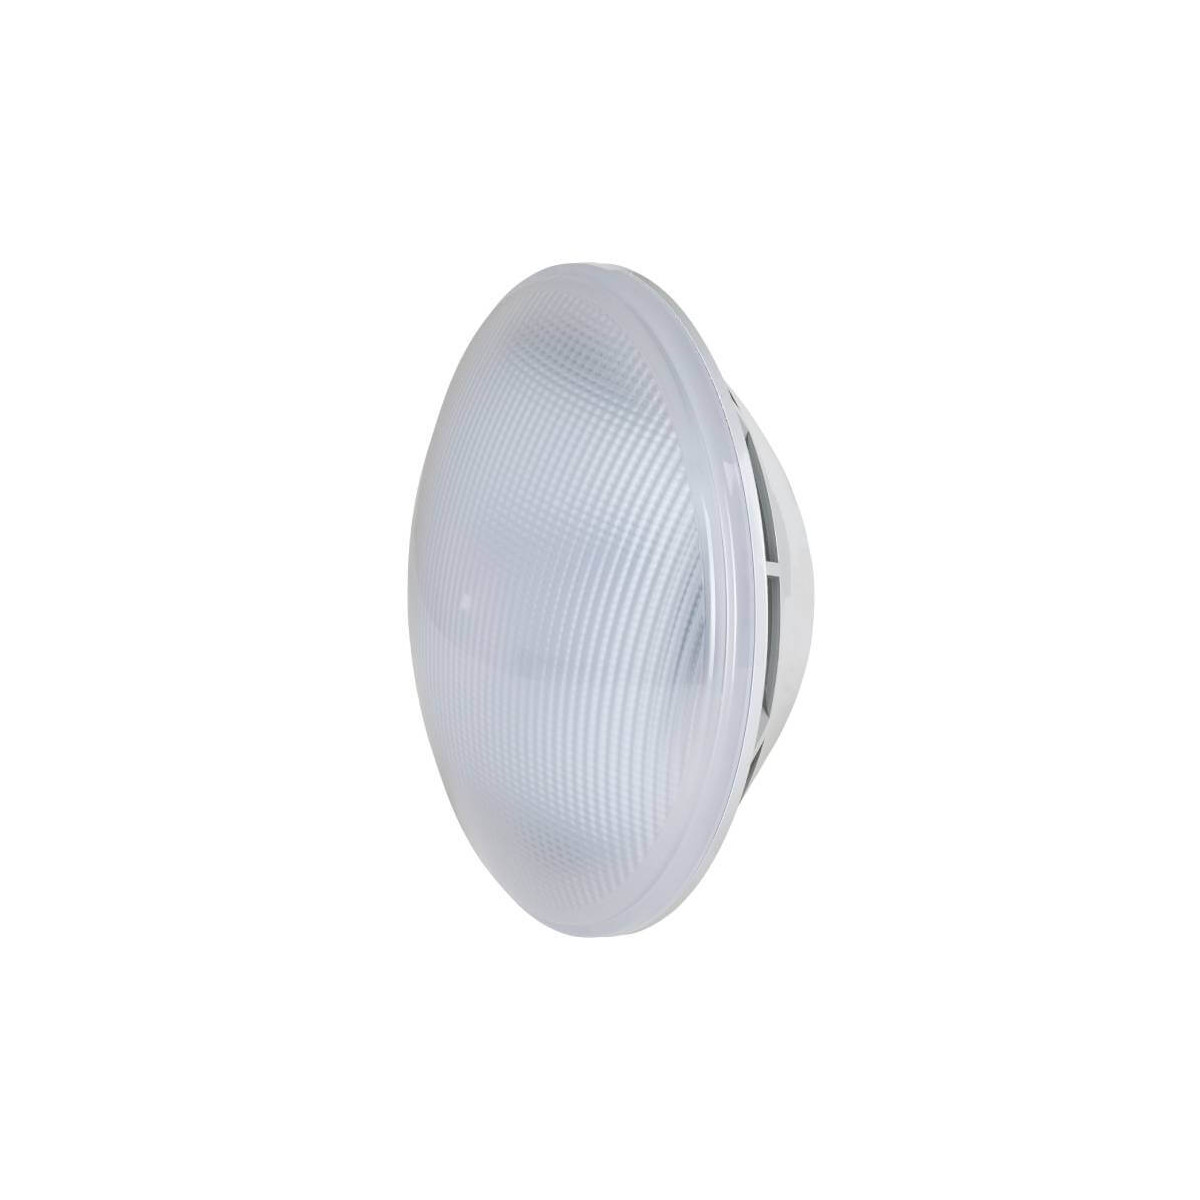 Lampe LED Blanche AstralPool pour Piscine 11,5 W PAR56